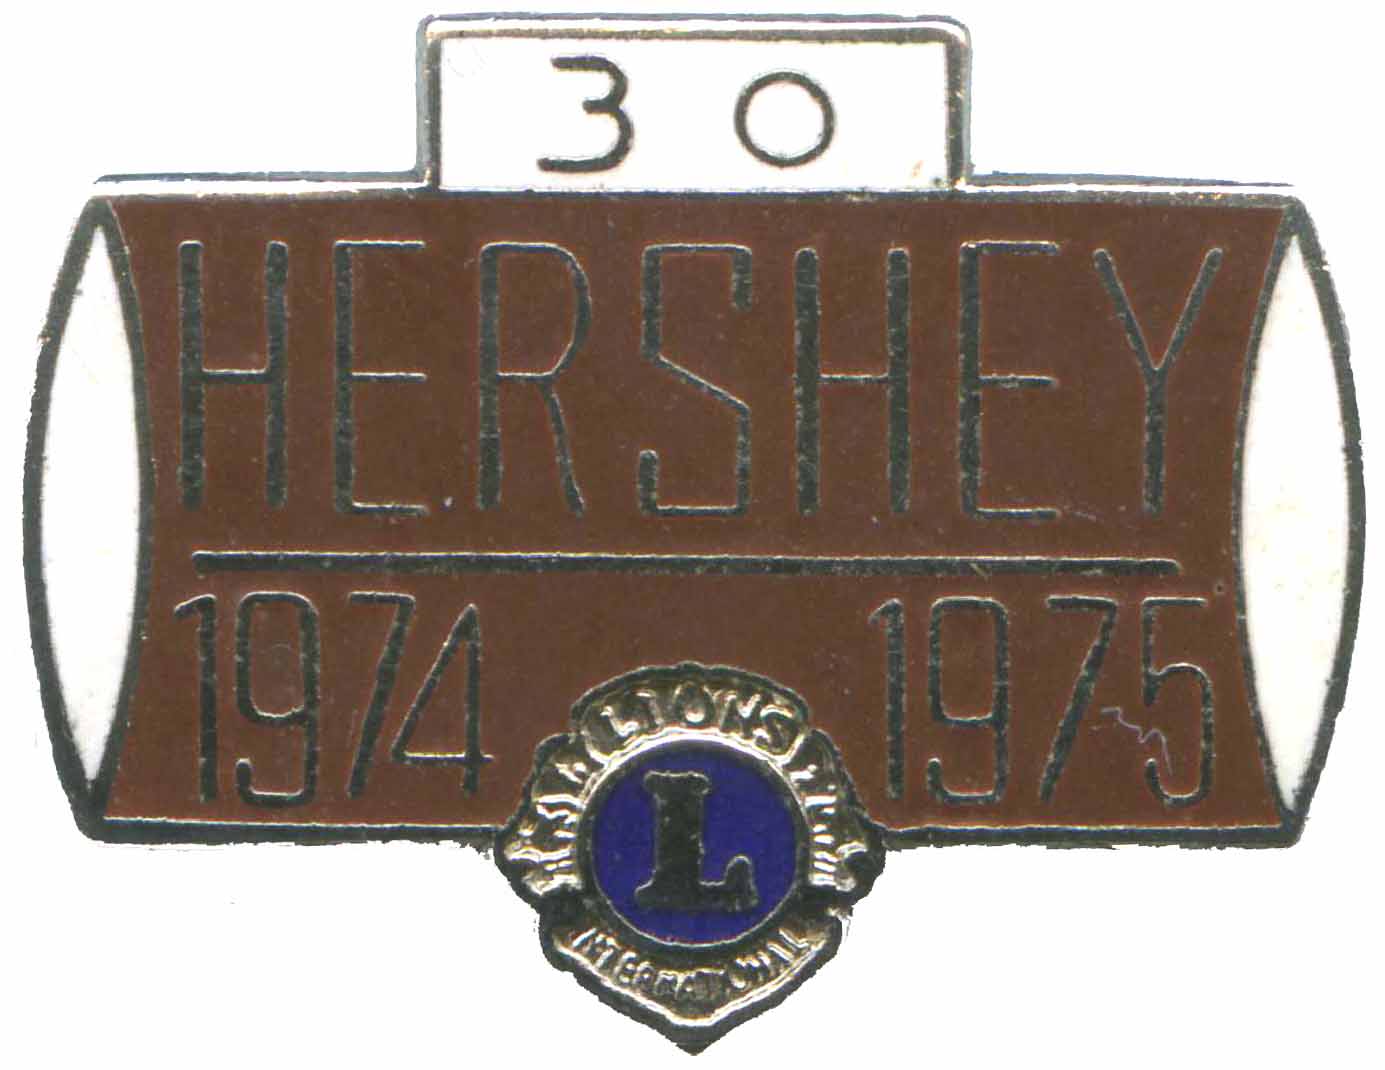 Hershey Pin 1975